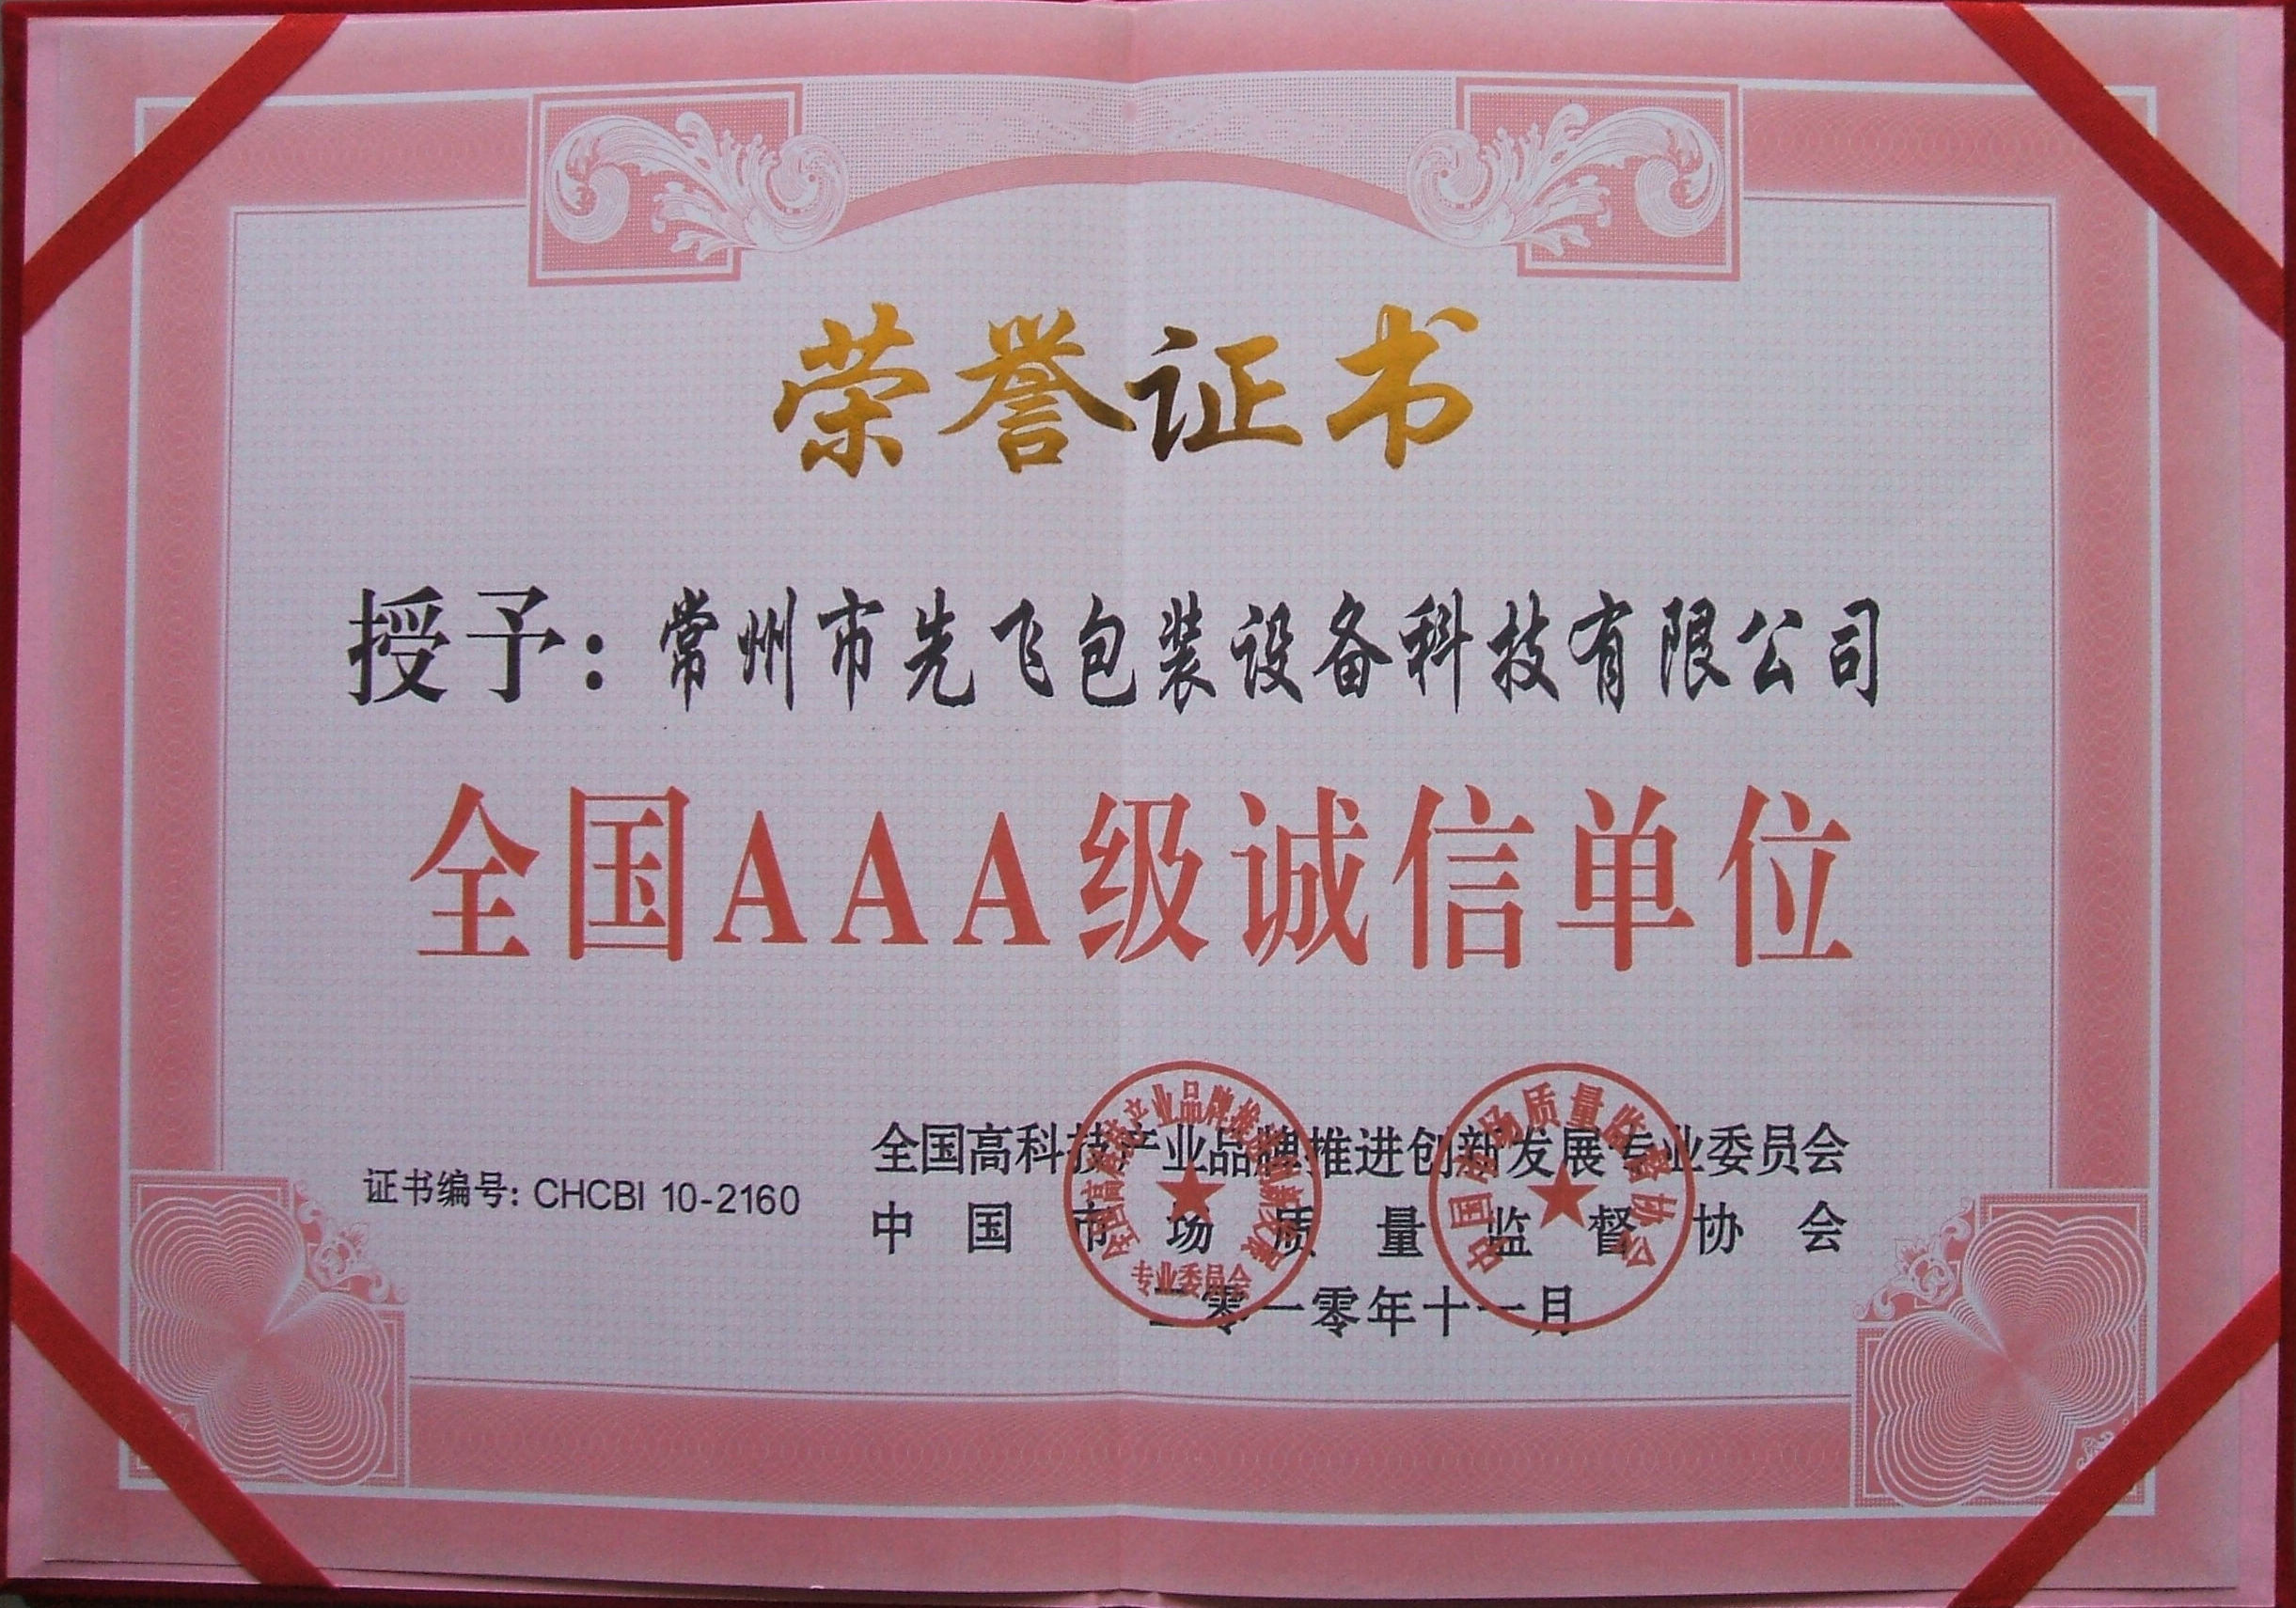 China Changzhou Xianfei Packing Equipment Technology Co., Ltd. Certificaten